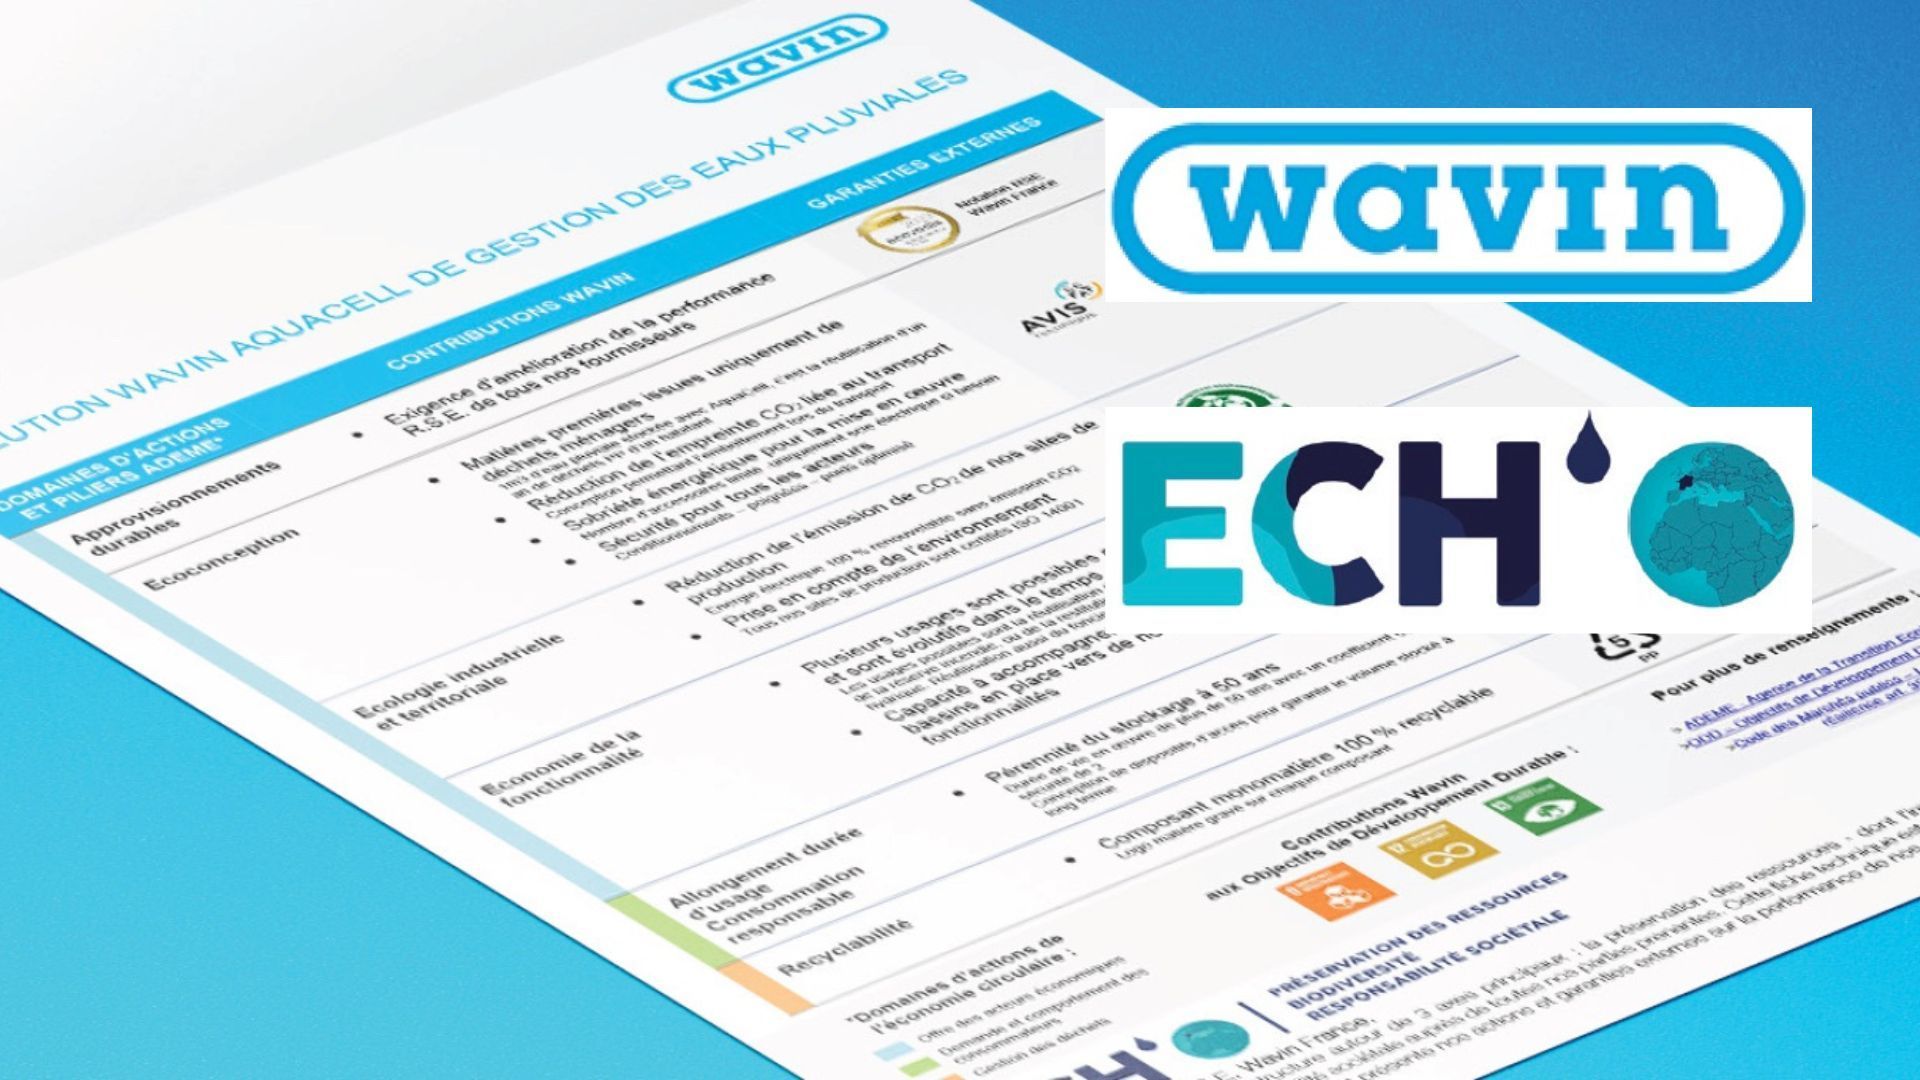 Wavin France dévoile ECH’O des actions visant à renforcer et à afficher ses engagements RSE localement